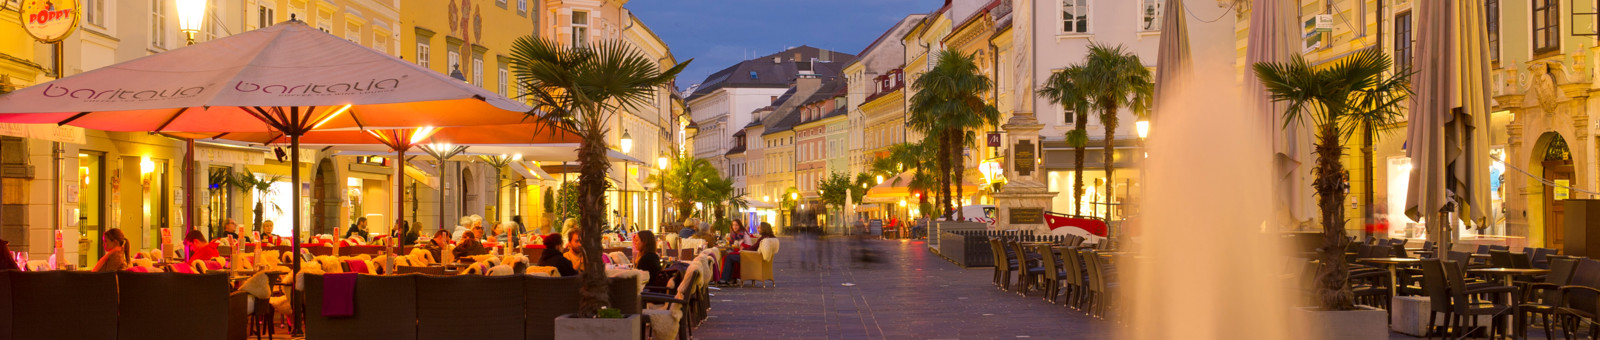     Klagenfurt in the evening 